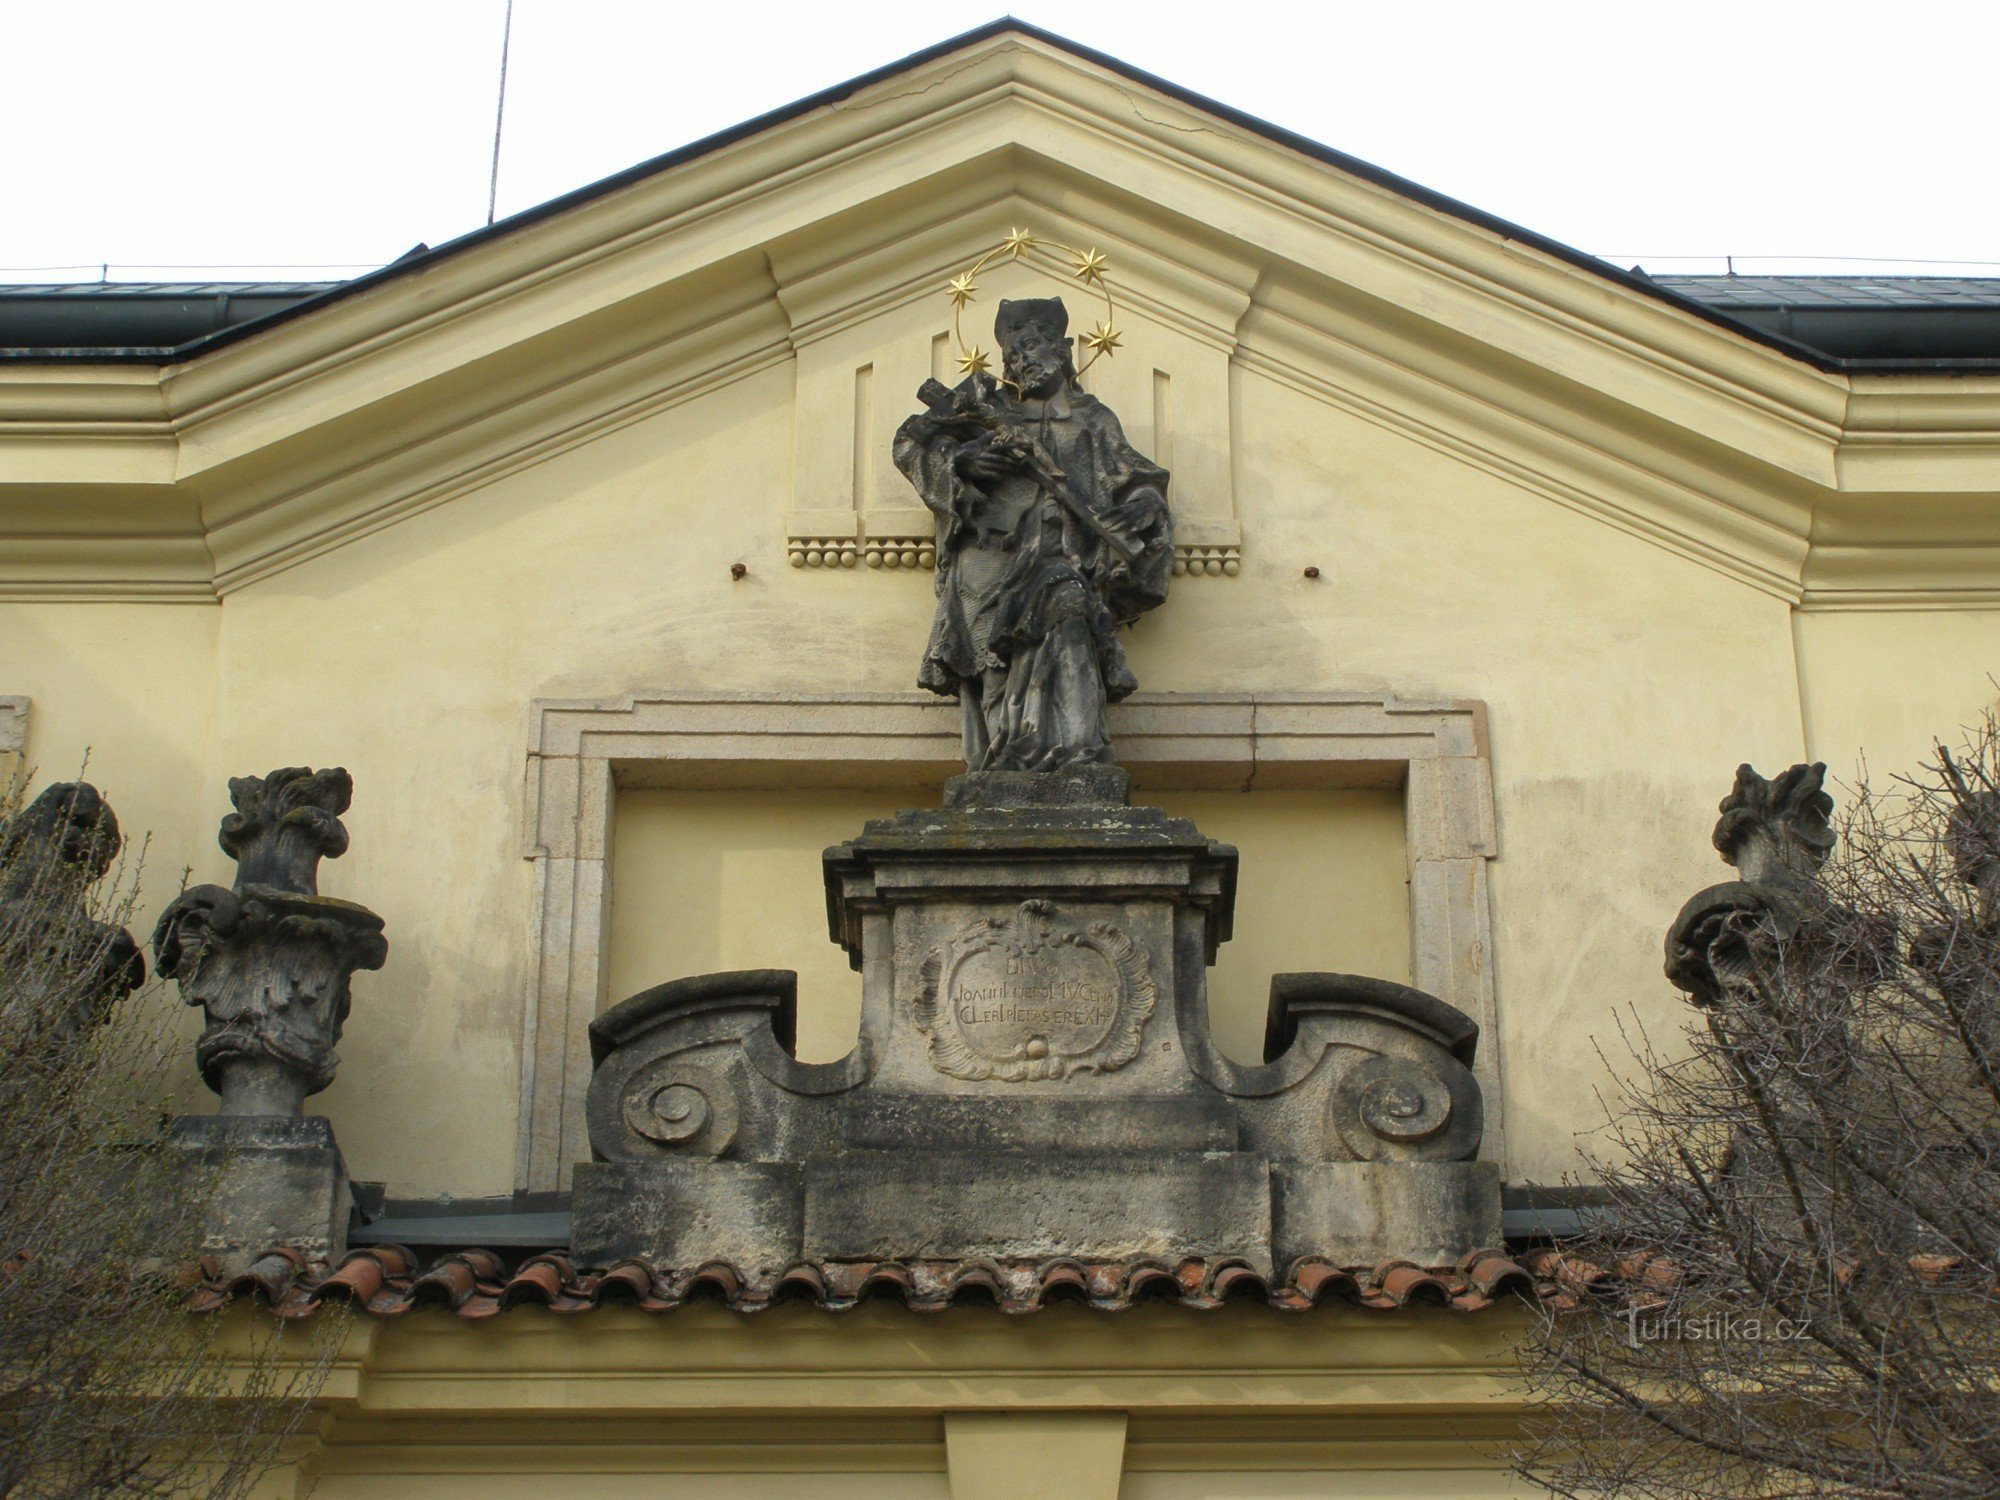 Hradec Králové – Gradska glazbena dvorana